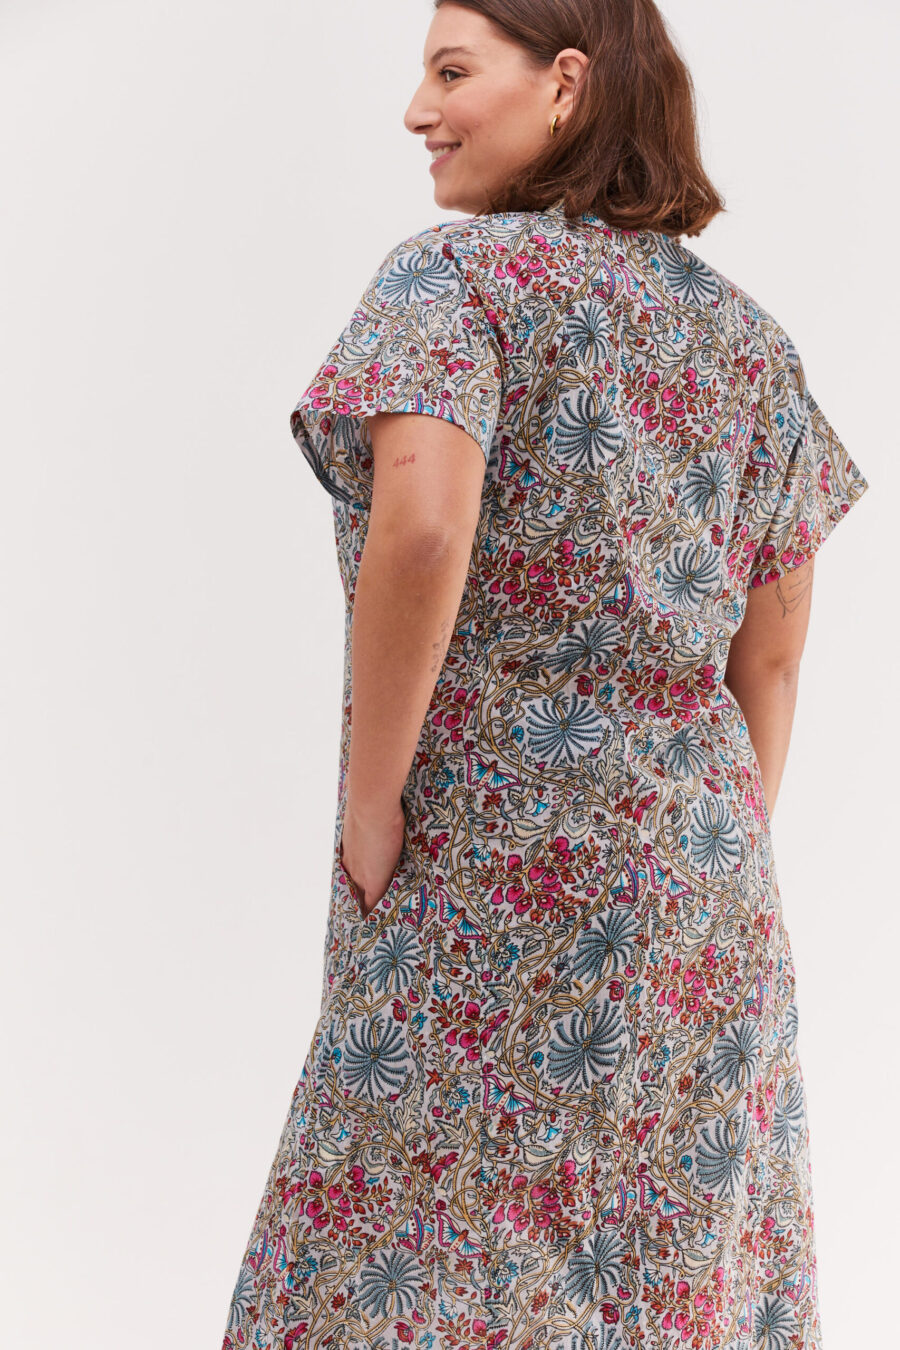 גלביה לנשים | גלבייה בעיצוב ייחודי - הדפס ליבי, הדפס פרחוני בגוונים עדינים על רקע שמלה אפורה